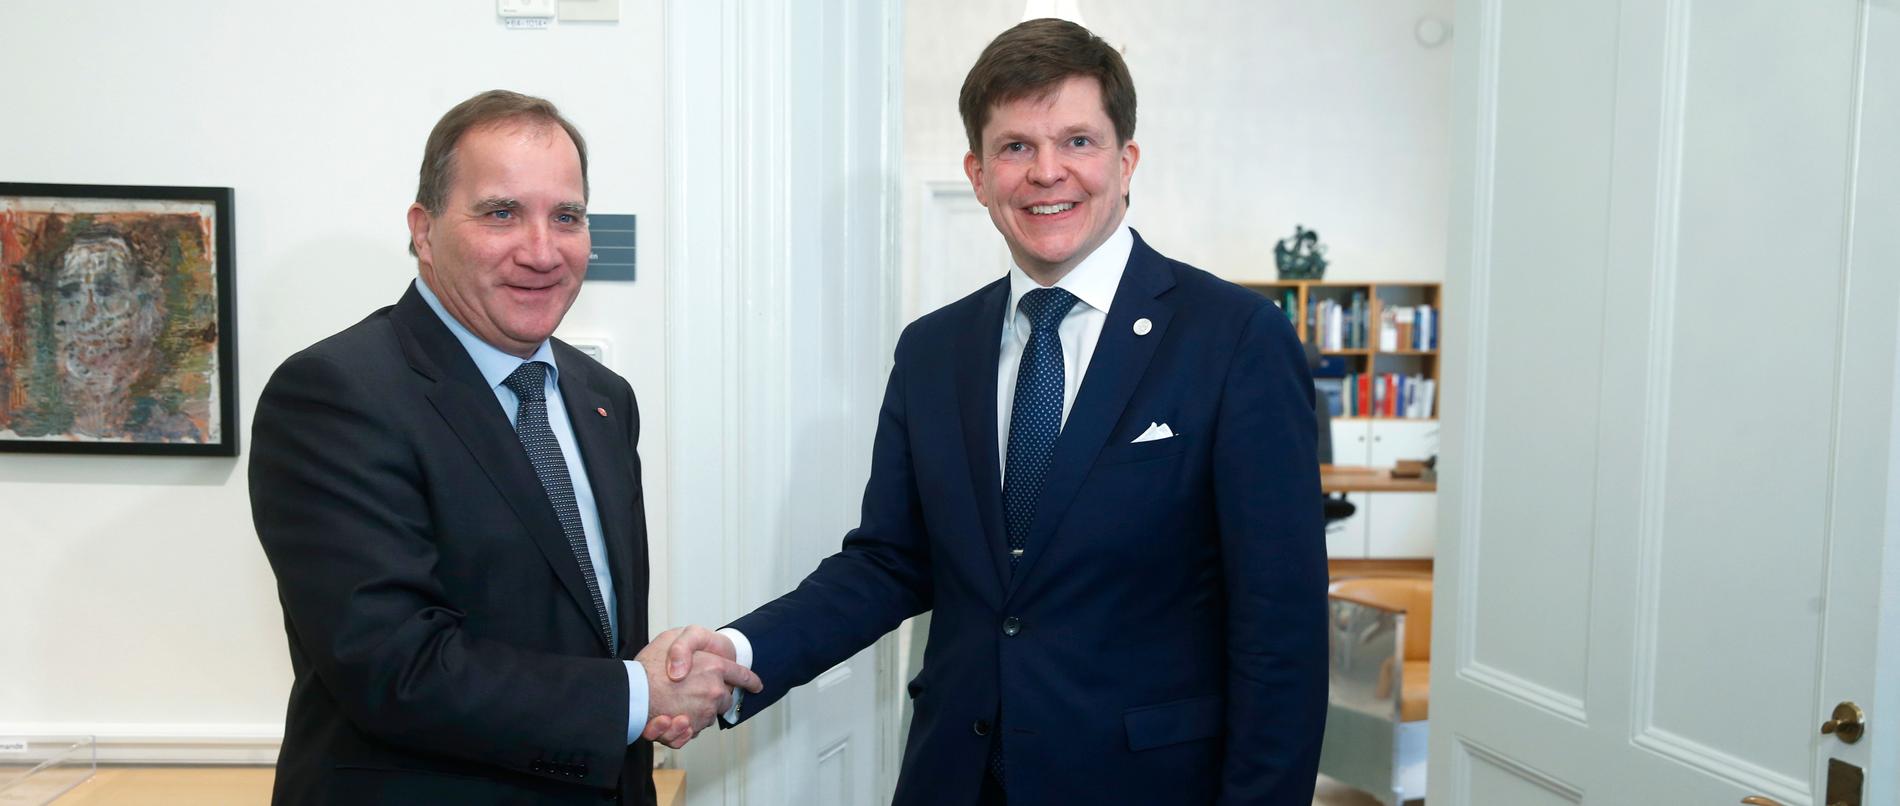 Stefan Löfven hälsar på riksdagens talman Andreas Norlén inför den andra talmansrundan.